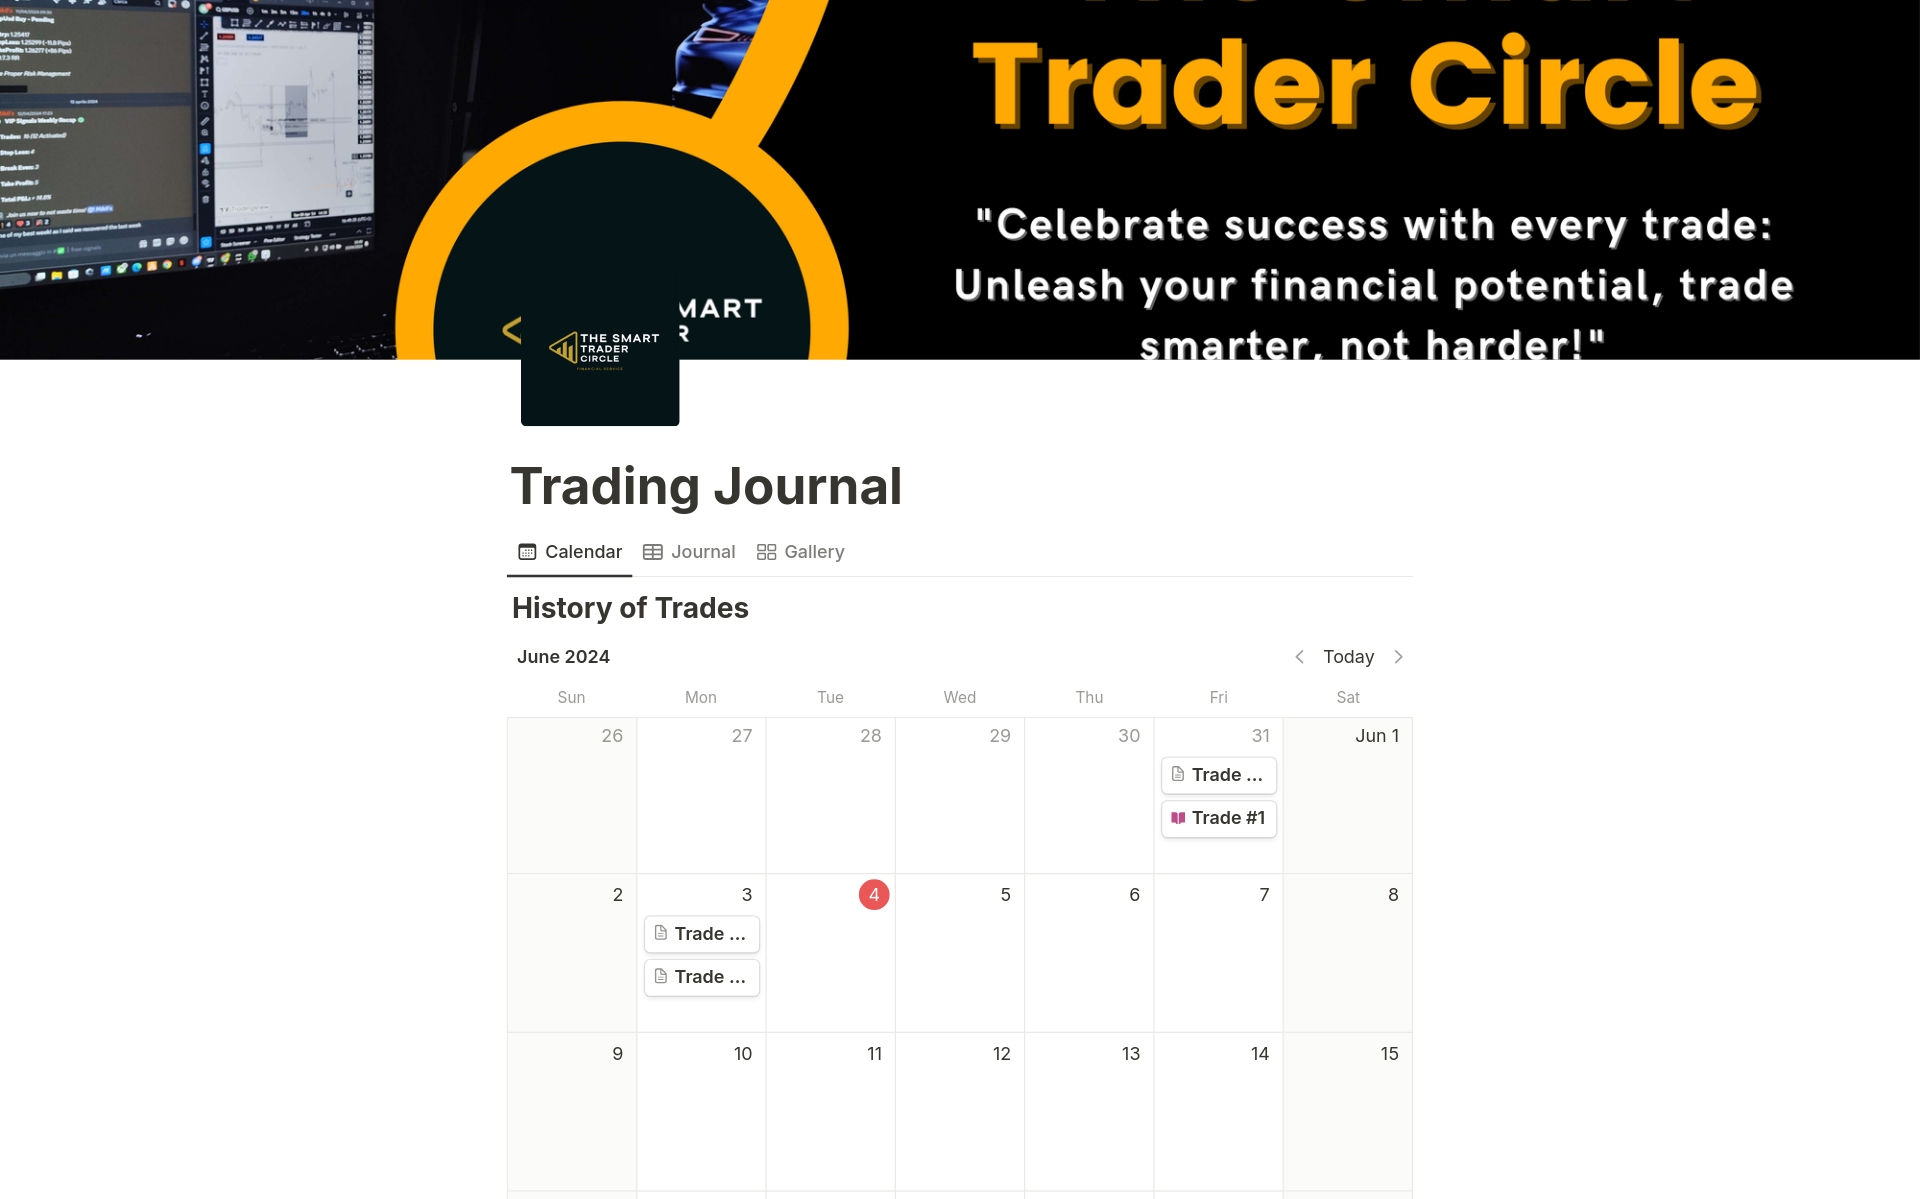 Aperçu du modèle de Trading Journal